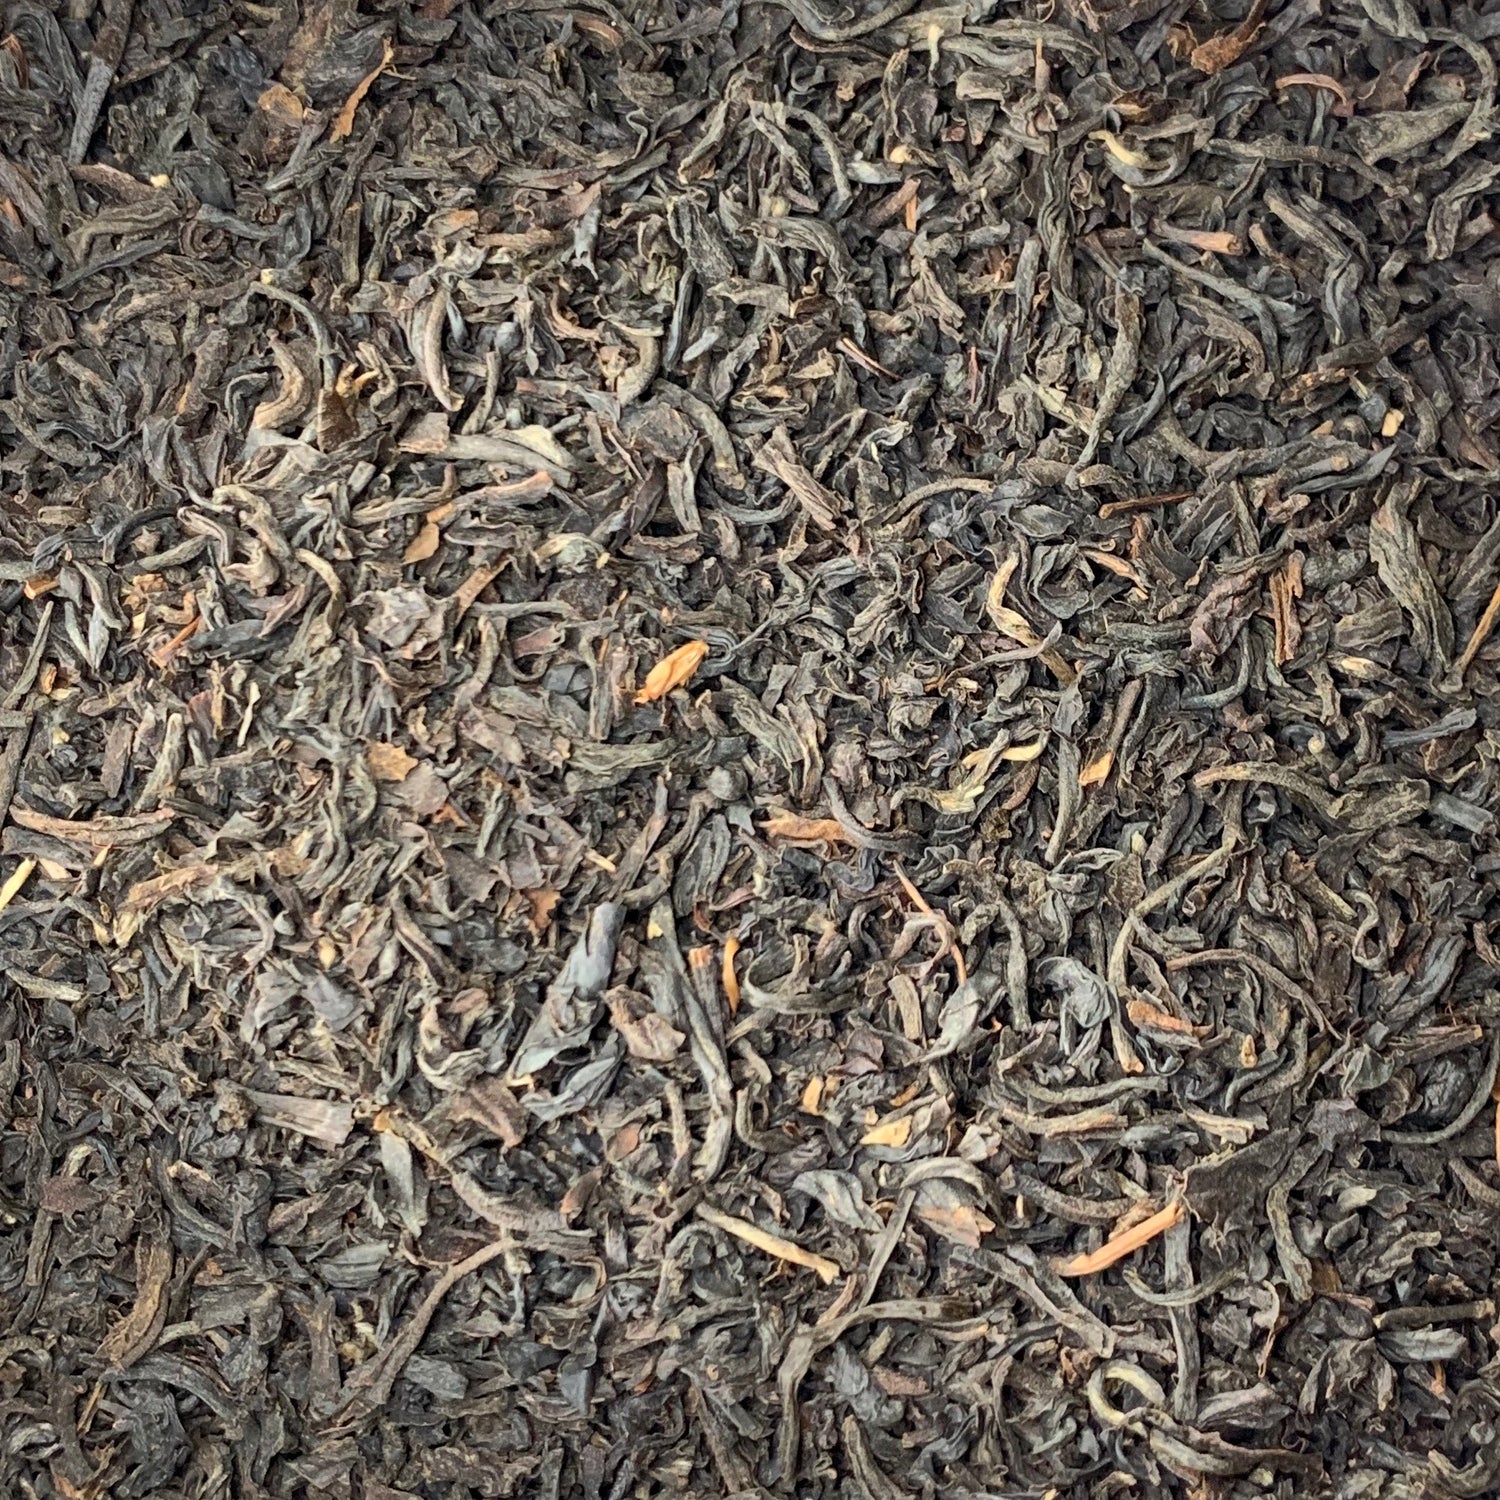 Assam Black Tea (Camellia sinensis)